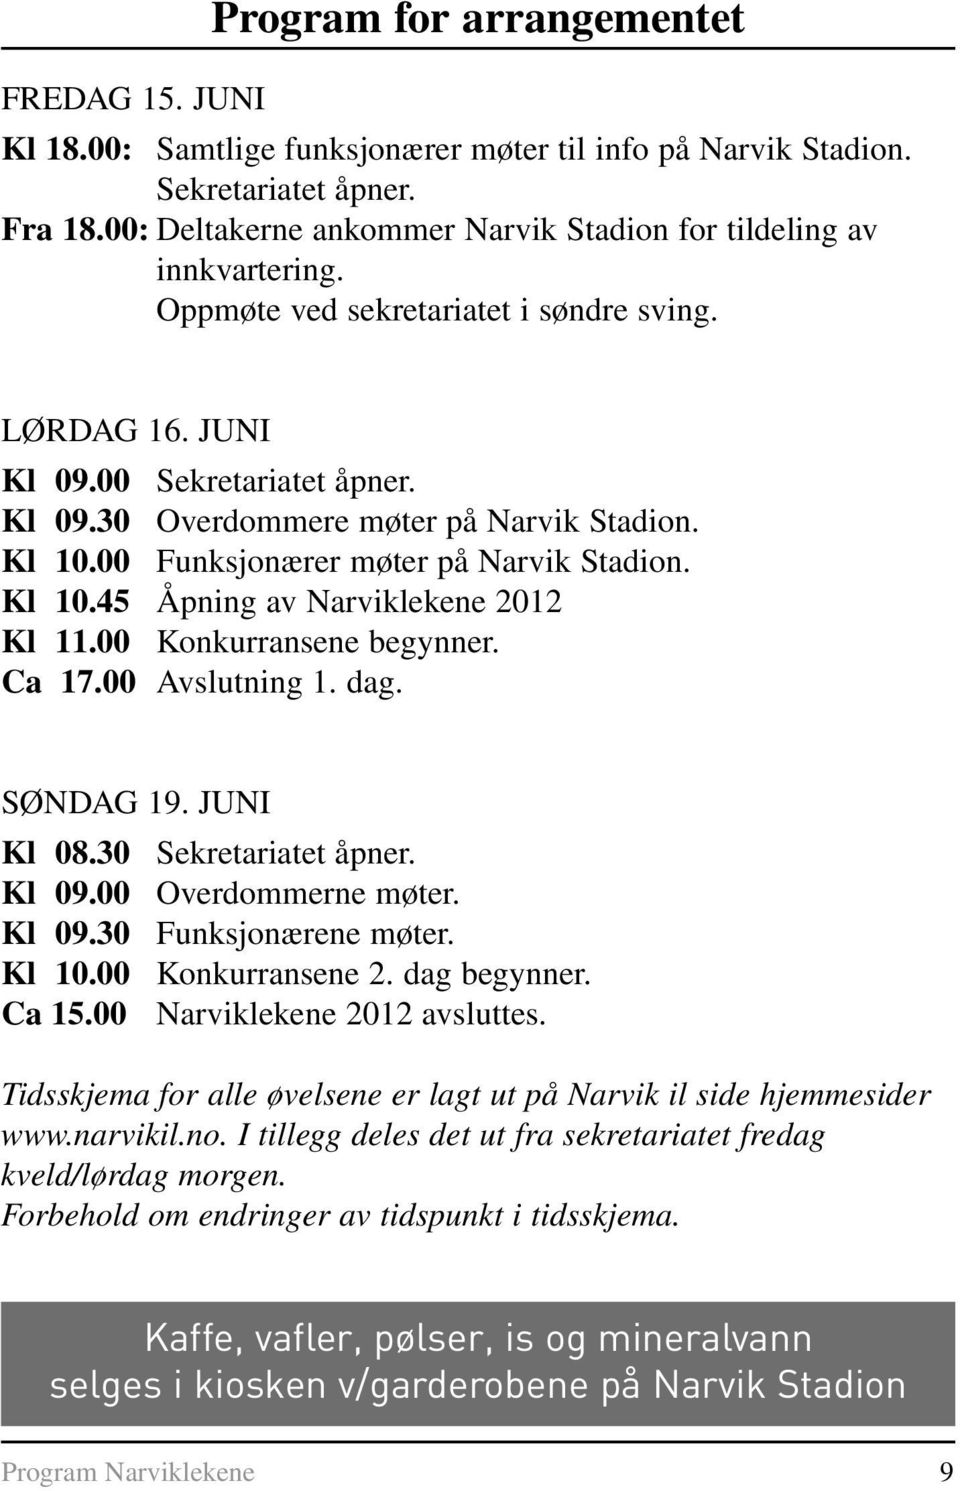 Kl 10.00 Funksjonærer møter på Narvik Stadion. Kl 10.45 Åpning av Narviklekene 2012 Kl 11.00 Konkurransene begynner. Ca 17.00 Avslutning 1. dag. SØNDAG 19. JUNI Kl 08.30 Sekretariatet åpner. Kl 09.